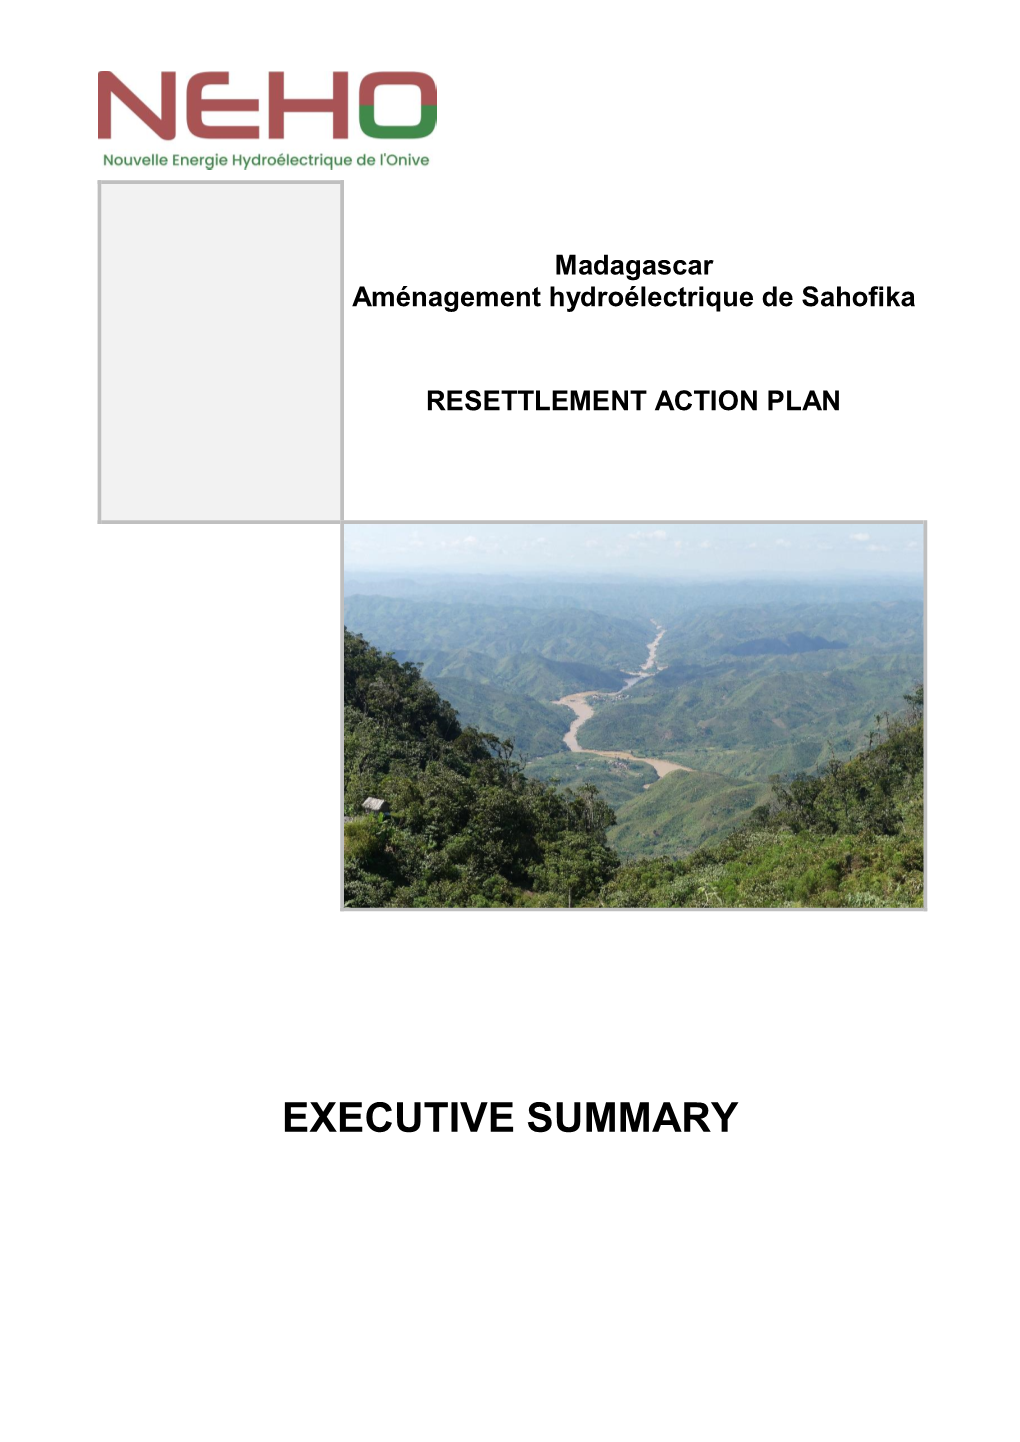 EXECUTIVE SUMMARY Consortium Eiffage Eranove HIER Themis Madagascar – Aménagement Hydroélectrique De Sahofika Resettlement Action Plan – Version C